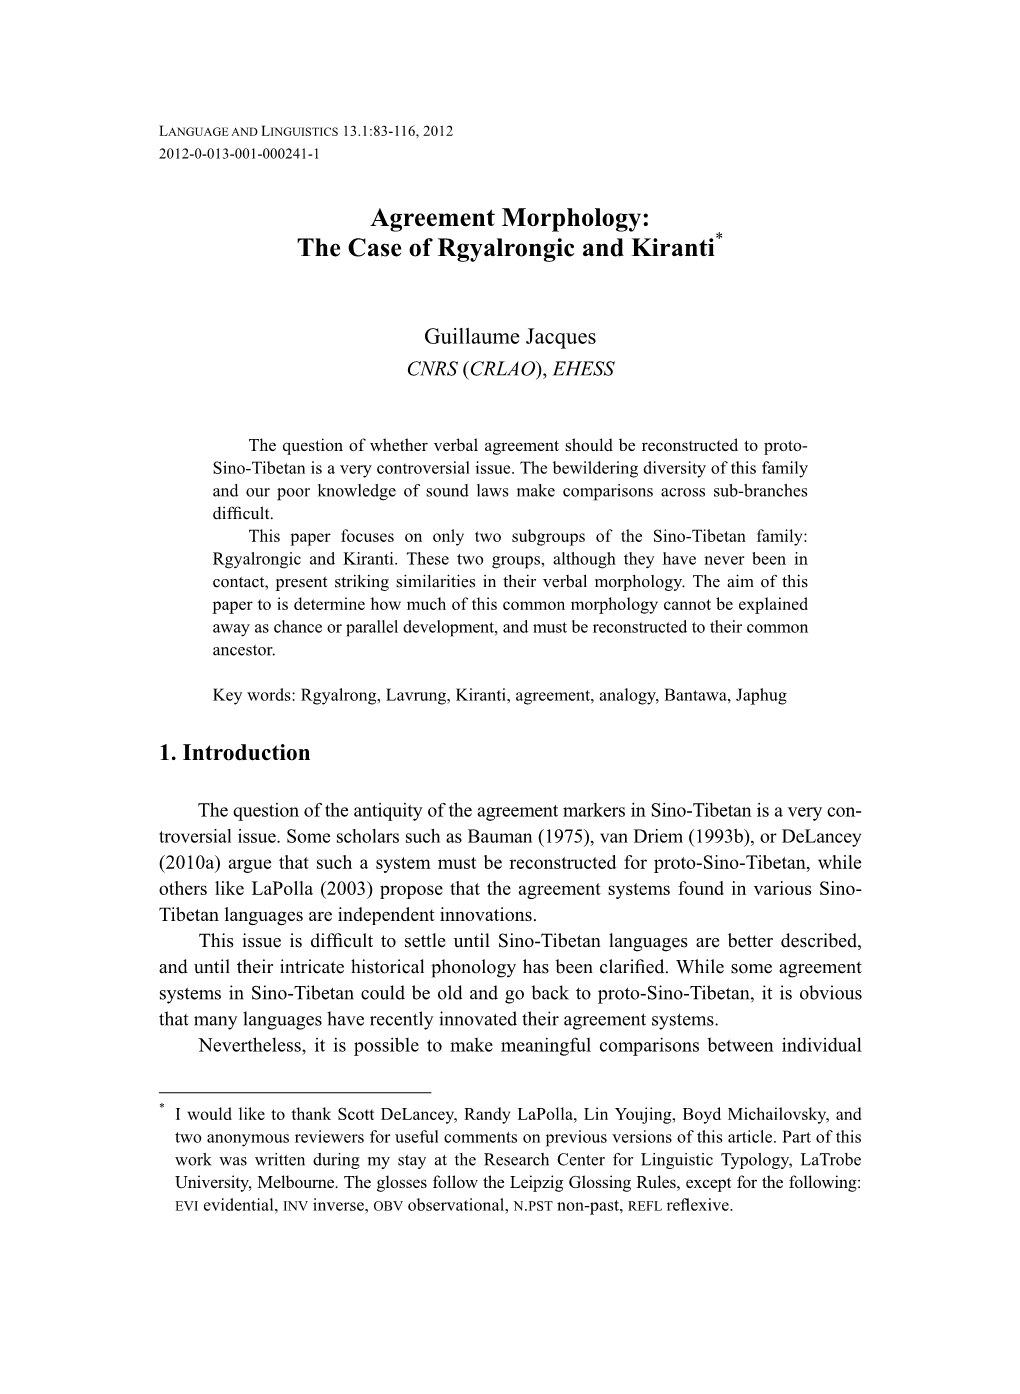 Agreement Morphology: the Case of Rgyalrongic and Kiranti*